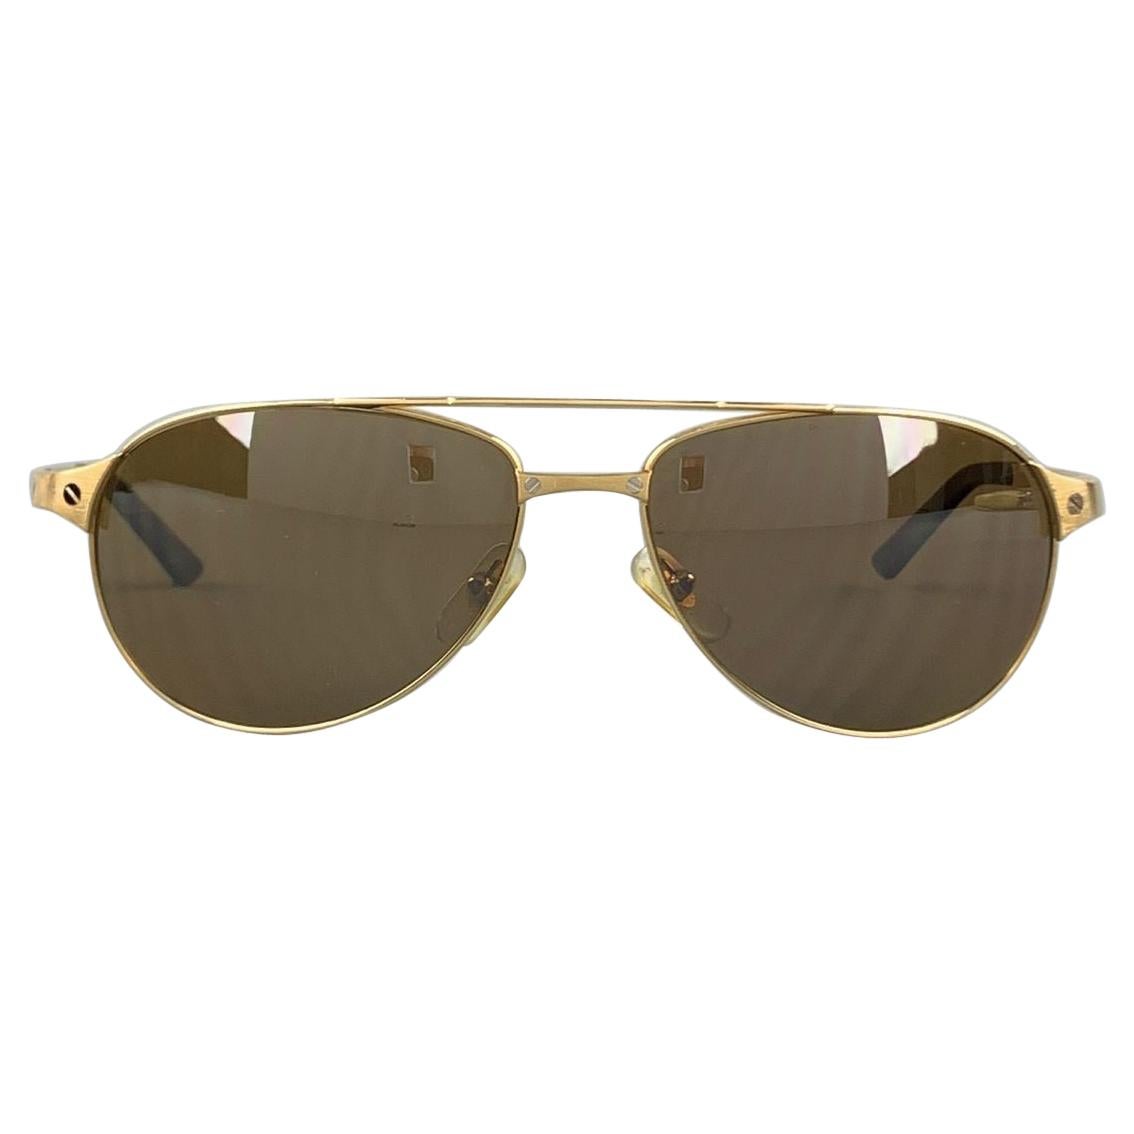 CARTIER Gold Tone Bushed Metal Edition Santos - Dumont Sunglasses